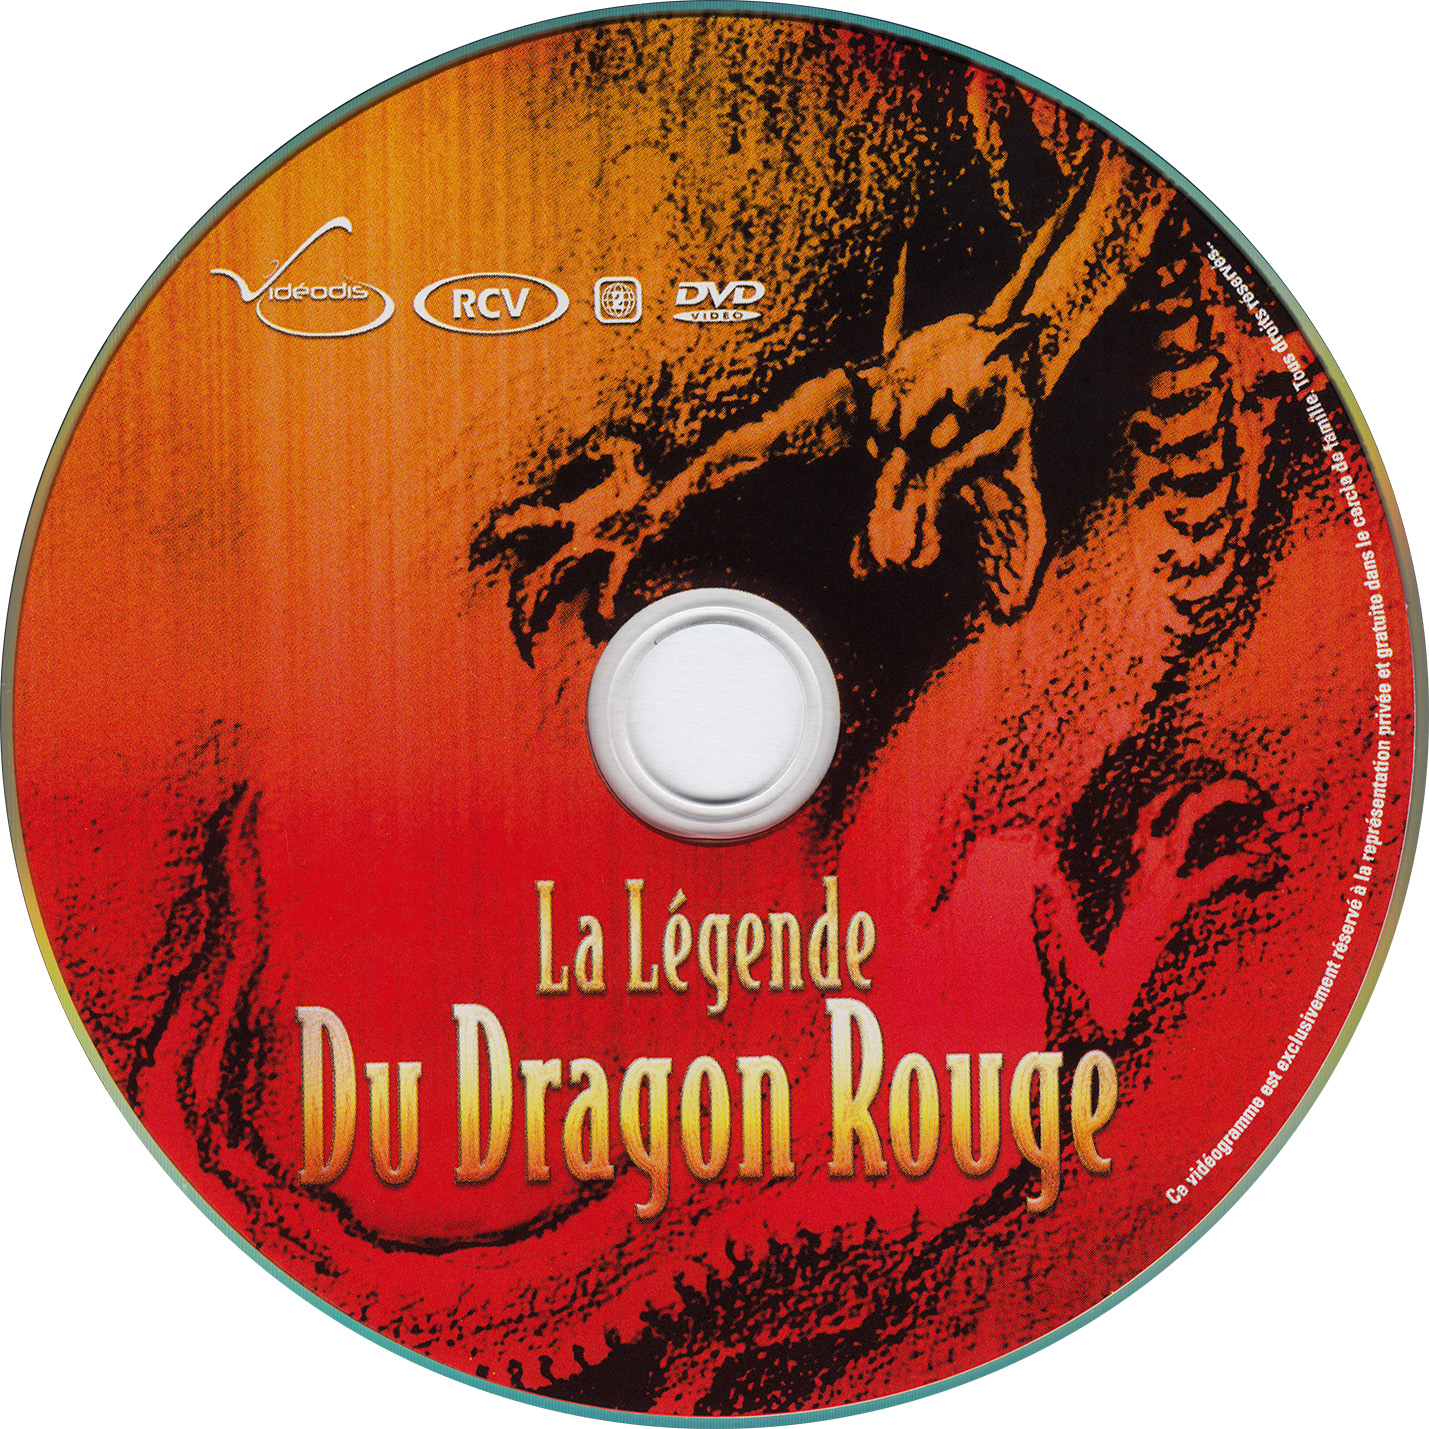 La legende du dragon rouge (1994)